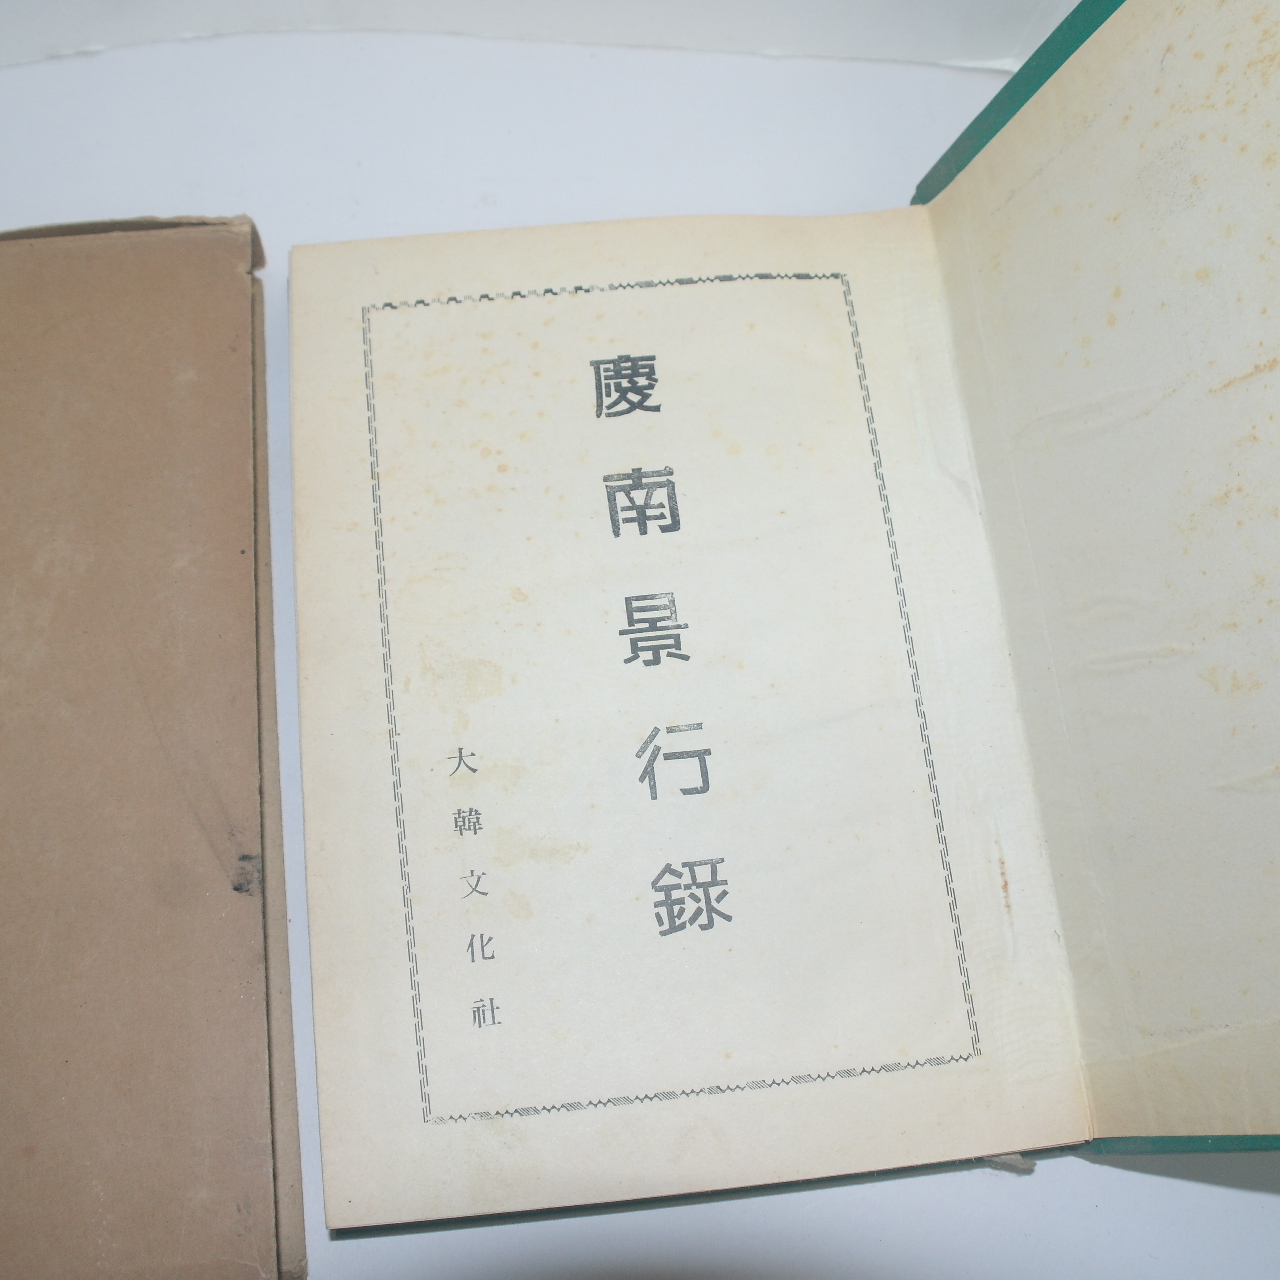 1971년 경남경행록(慶南景行錄) 1책완질